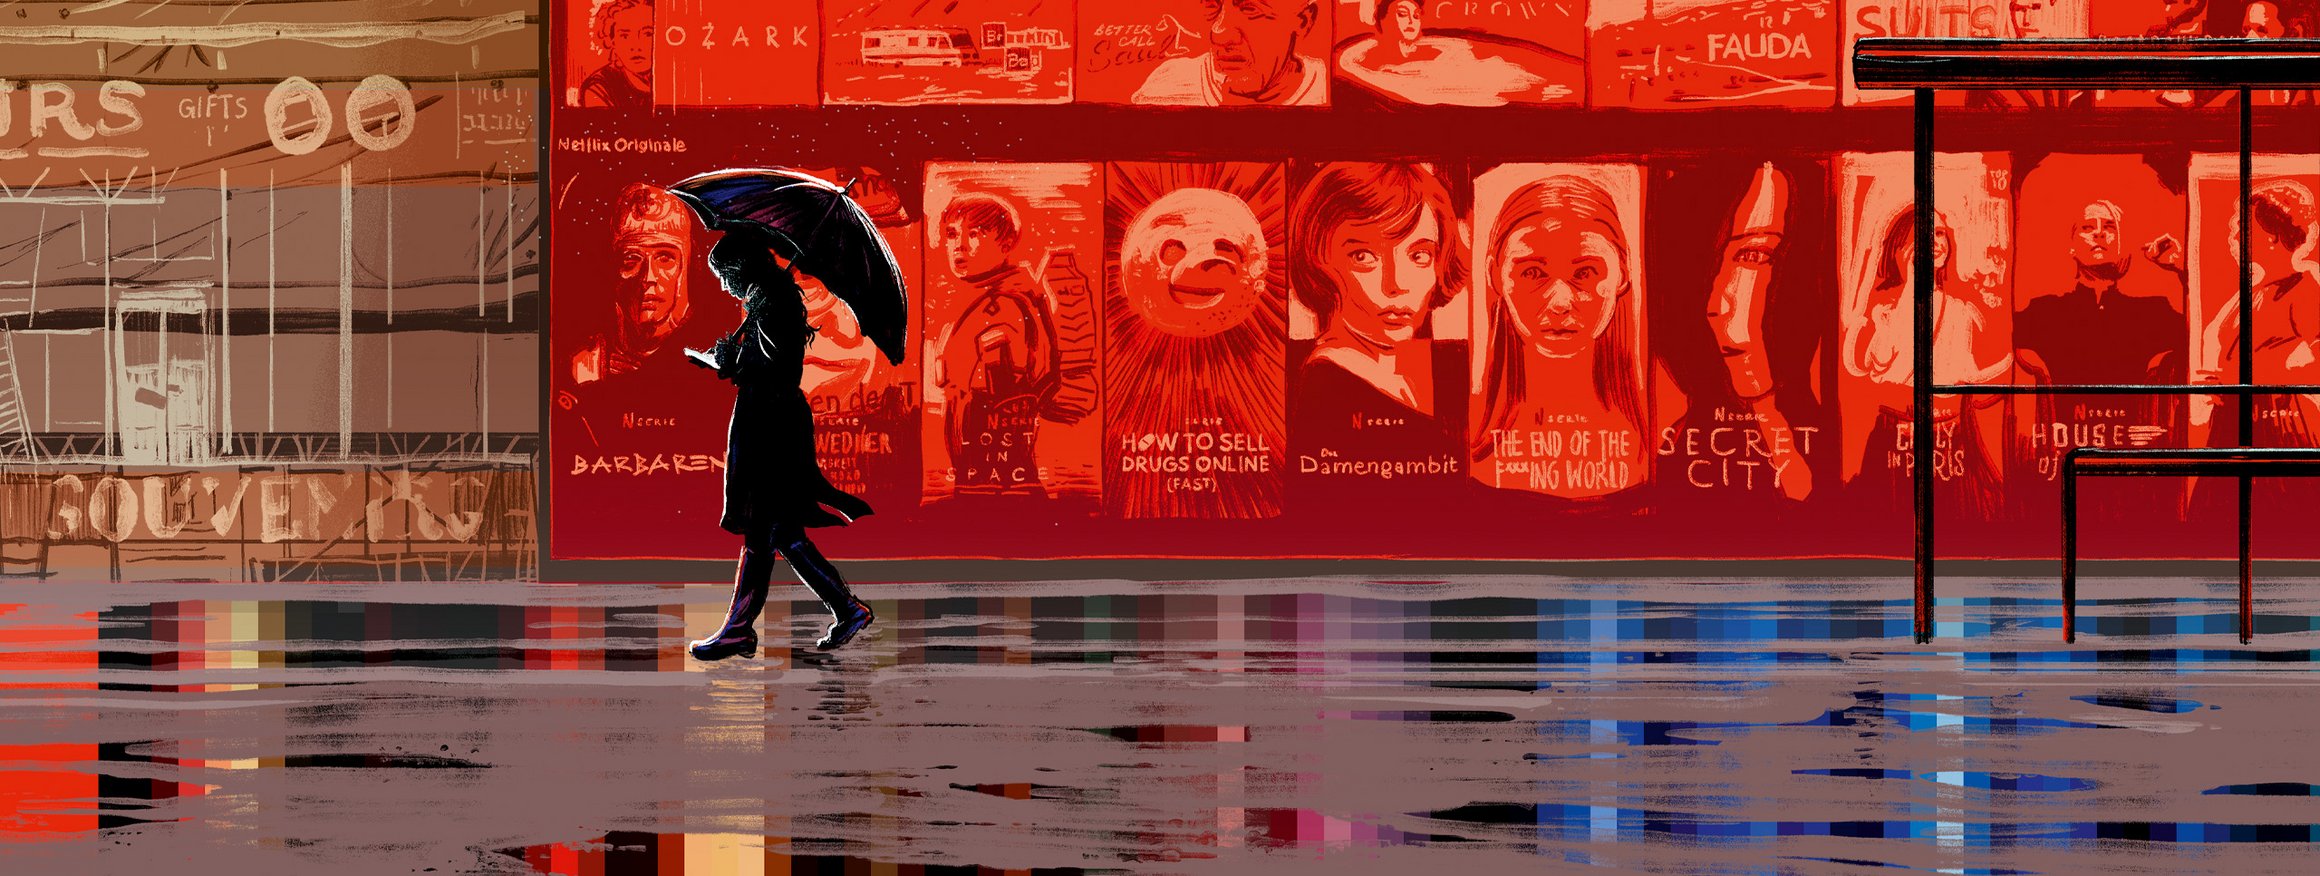 Die Illustration zeigt eine Frau mit Regenmantel, Smartphone und Regenschirm, die während es regnet, an einer großen, roten Netflix-Serienanzeige vorbeiläuft, wobei die Serienfiguren sie mit den Augen verfolgen